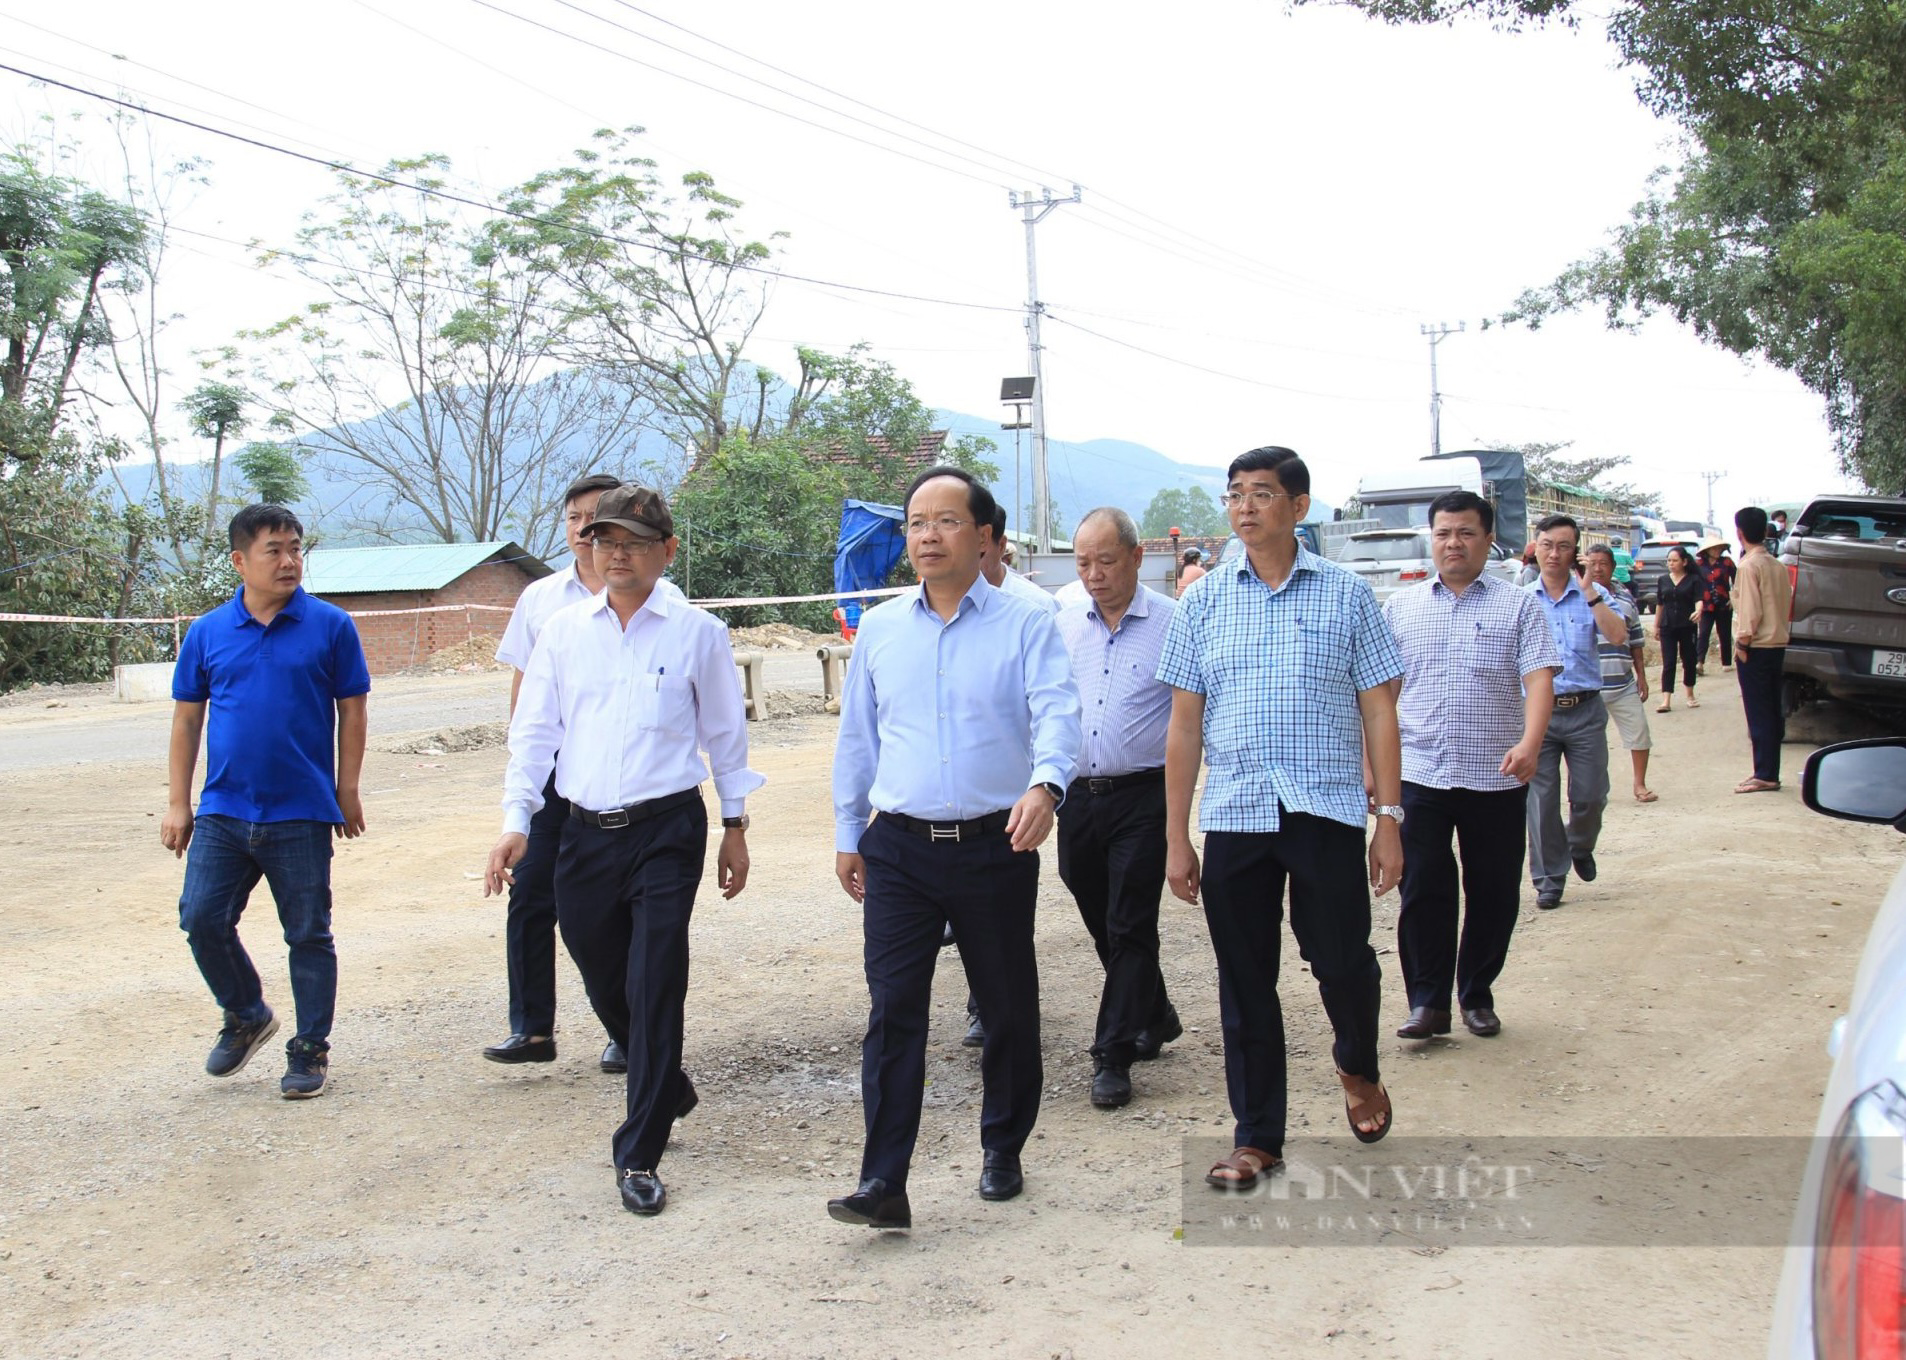 Thứ trưởng Bộ GTVT, Phó Chủ tịch tỉnh thị sát cung đường "đau khổ" nhất Bình Định- Ảnh 1.